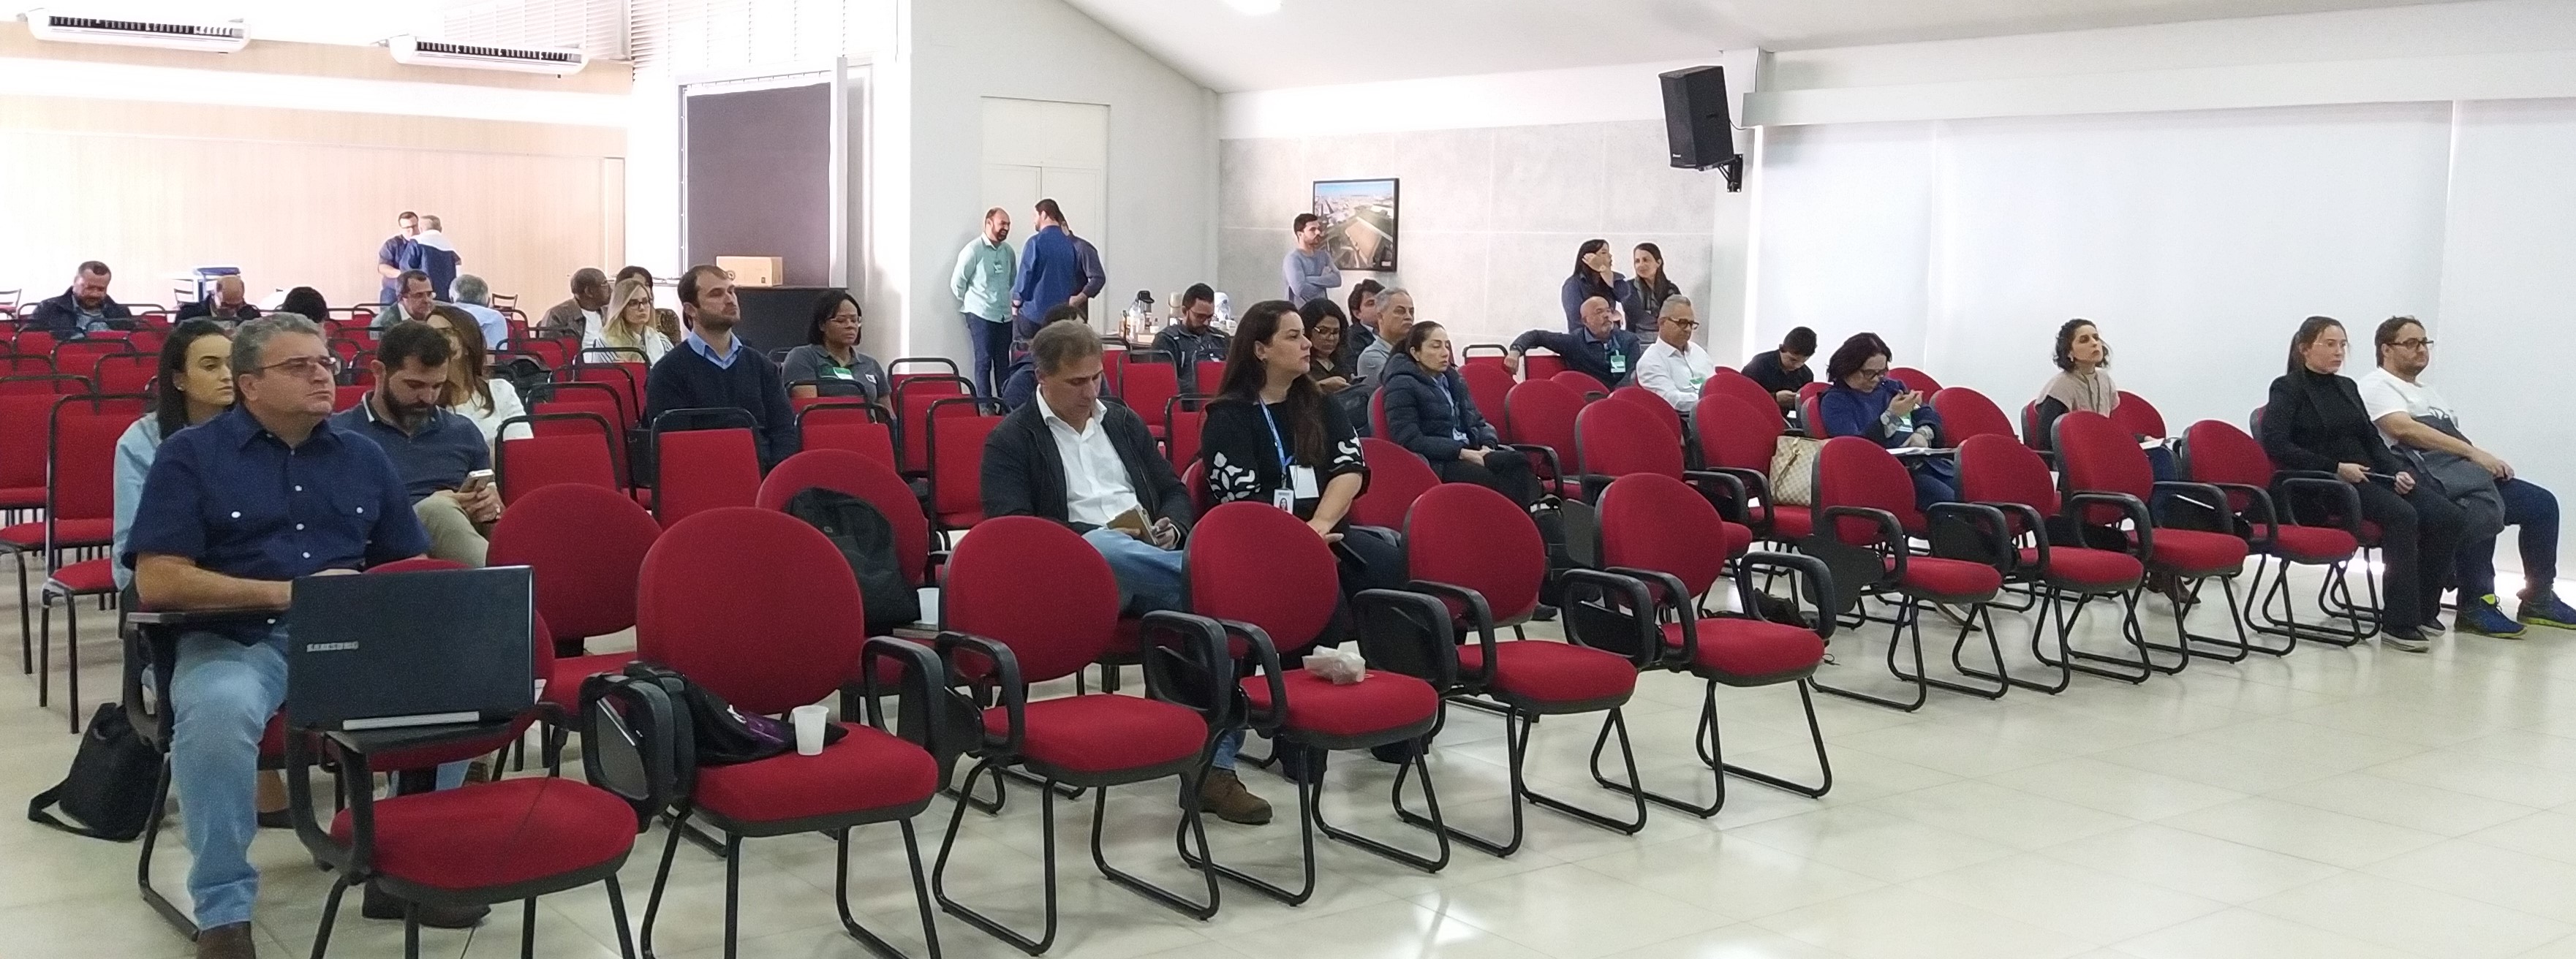 Outorgas e recurso suplementar para agência de bacia são aprovados pelo Comitê do Rio Araguari